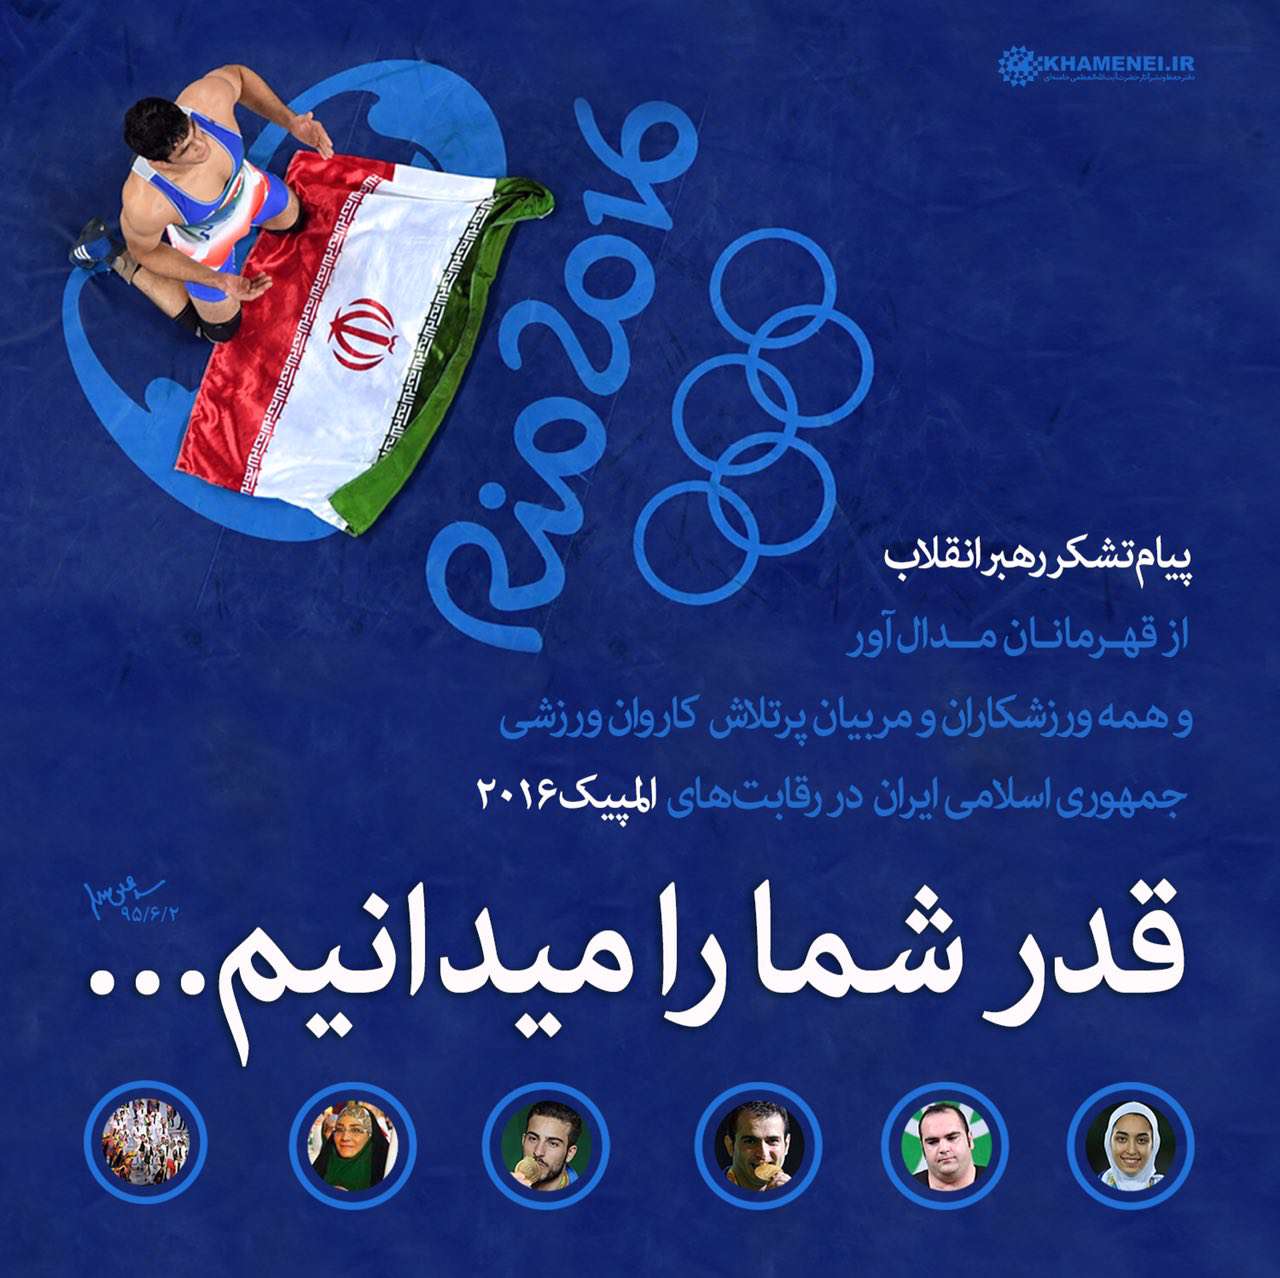 پیام تشکر رهبر انقلاب از کاروان ورزشی ایران در المپیک ۲۰۱۶ ریو

قدر شما را ميدانيم...